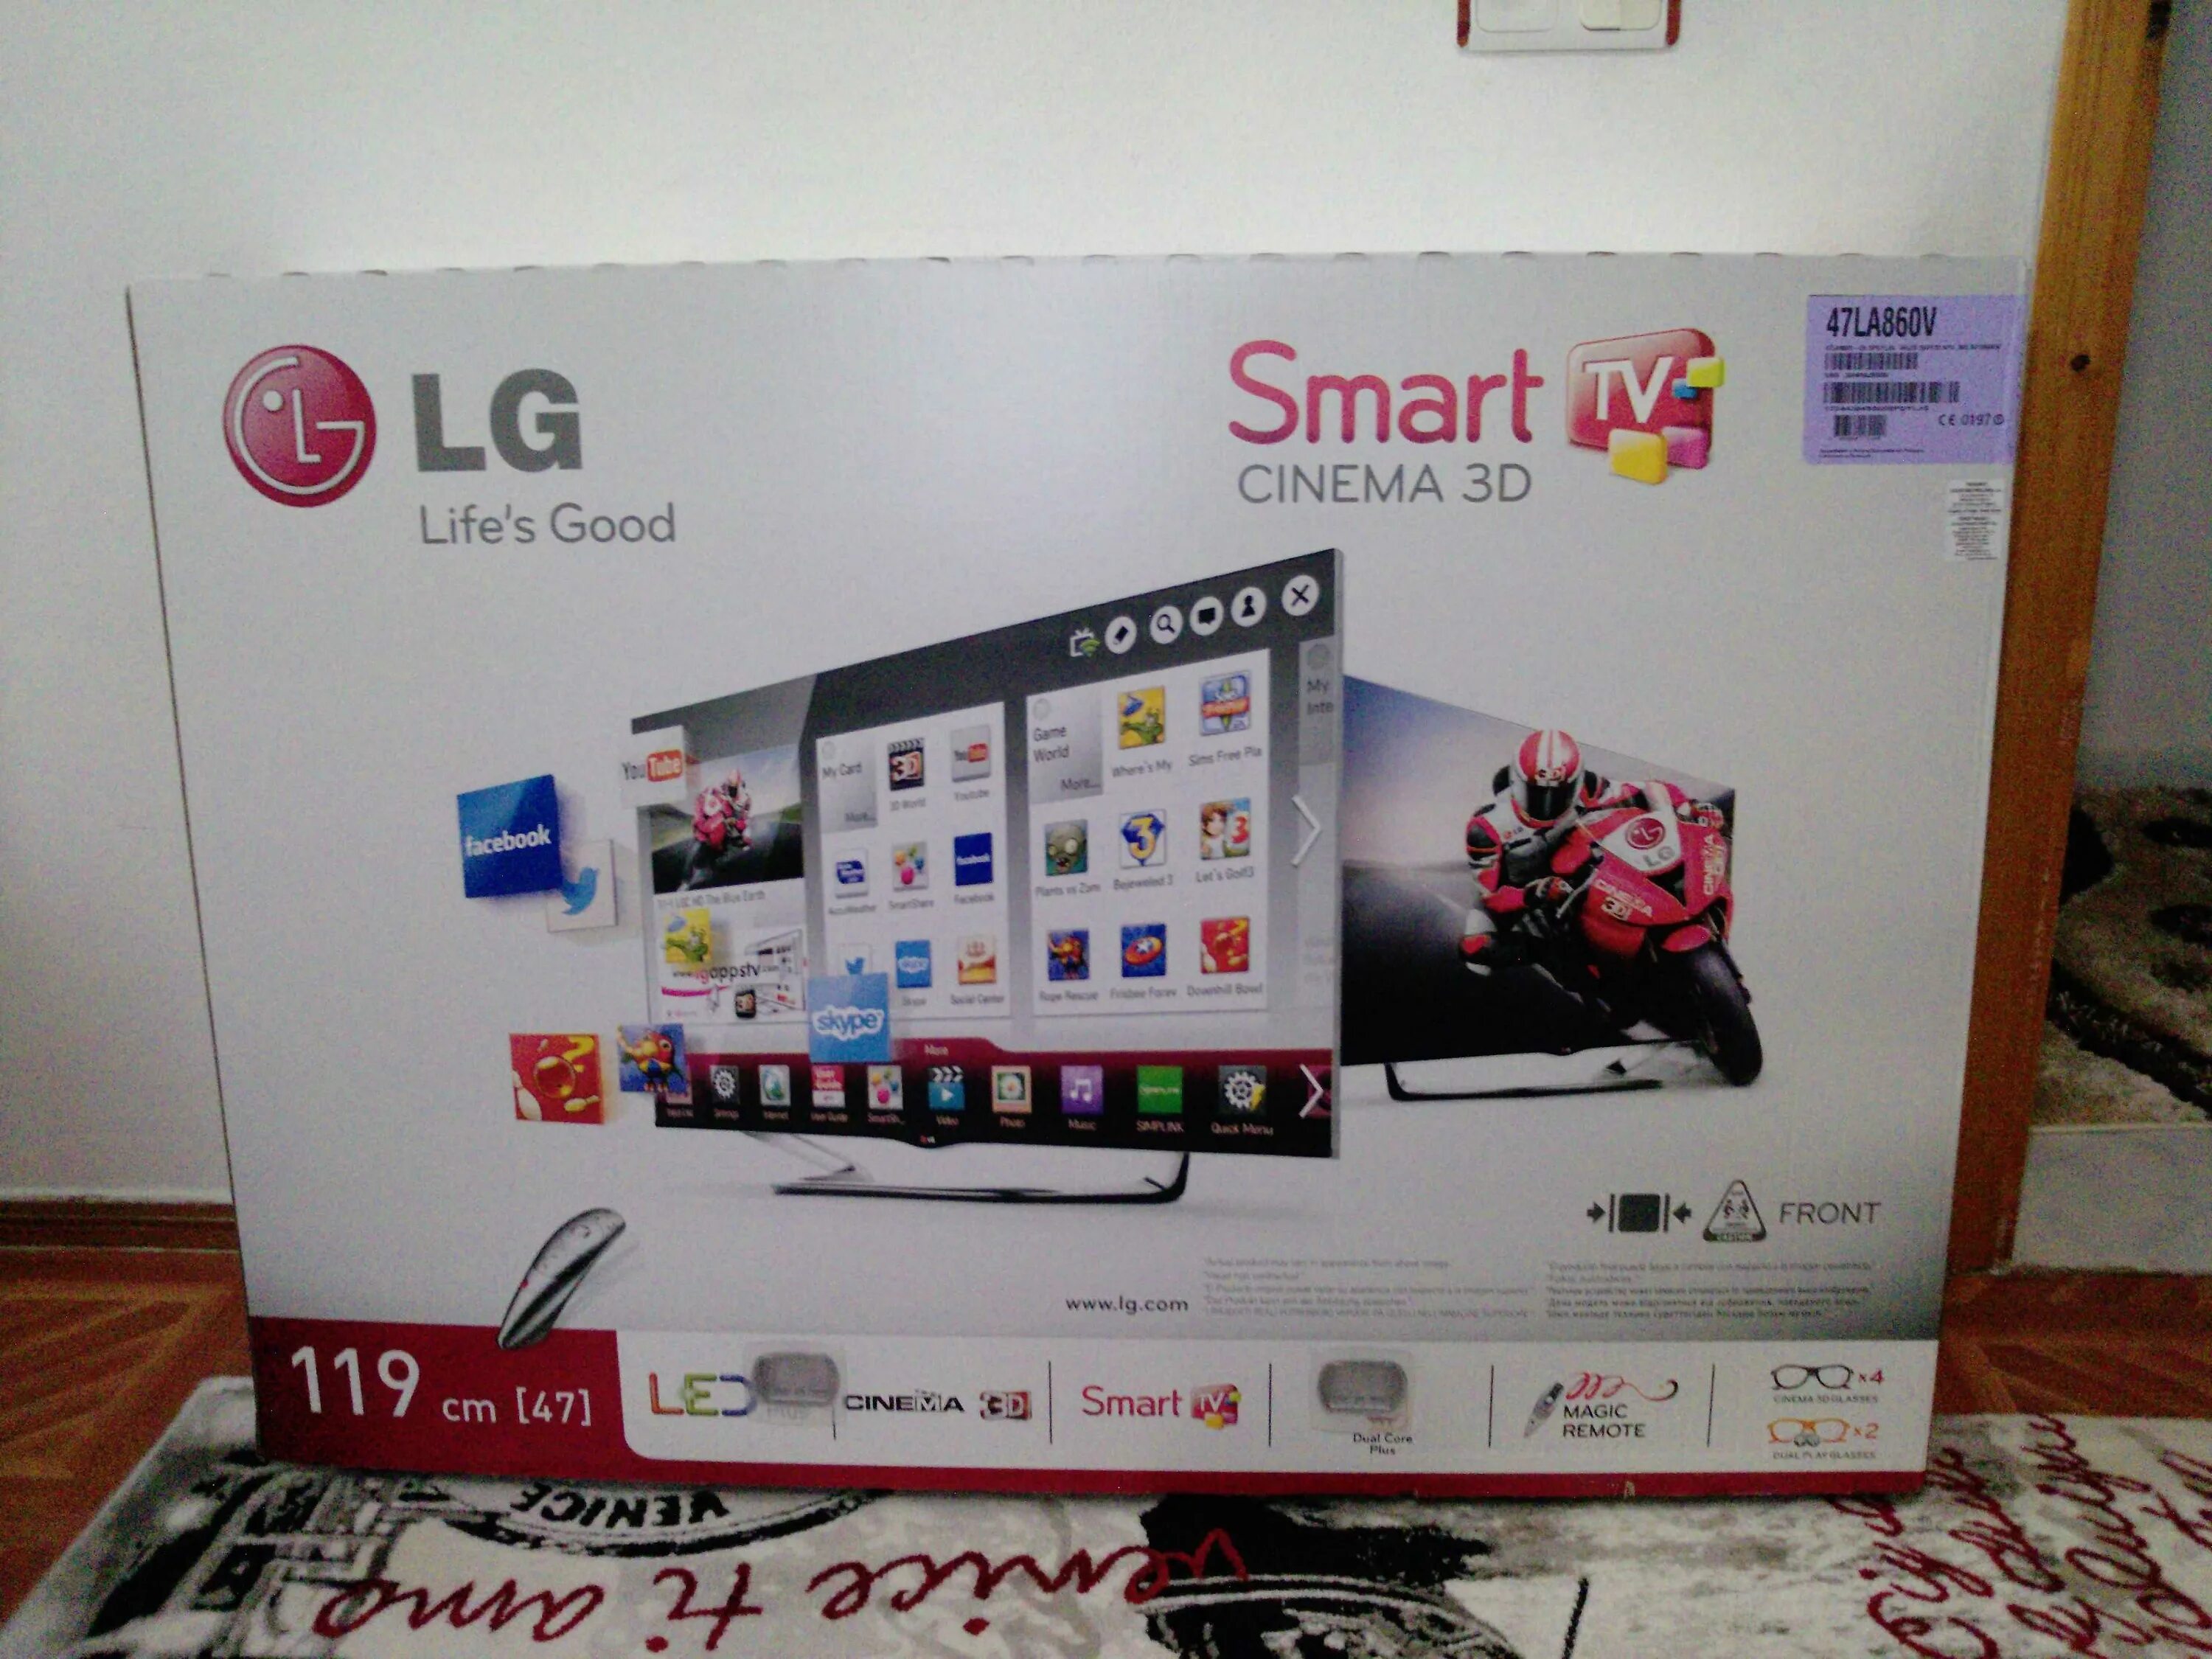 Телевизоры lg 2013 года. Телевизор LG 47la960v 47". LG Smart TV 2013 года. Телевизор LG 47la667v 47". Телевизор LG Smart TV 2013 года.